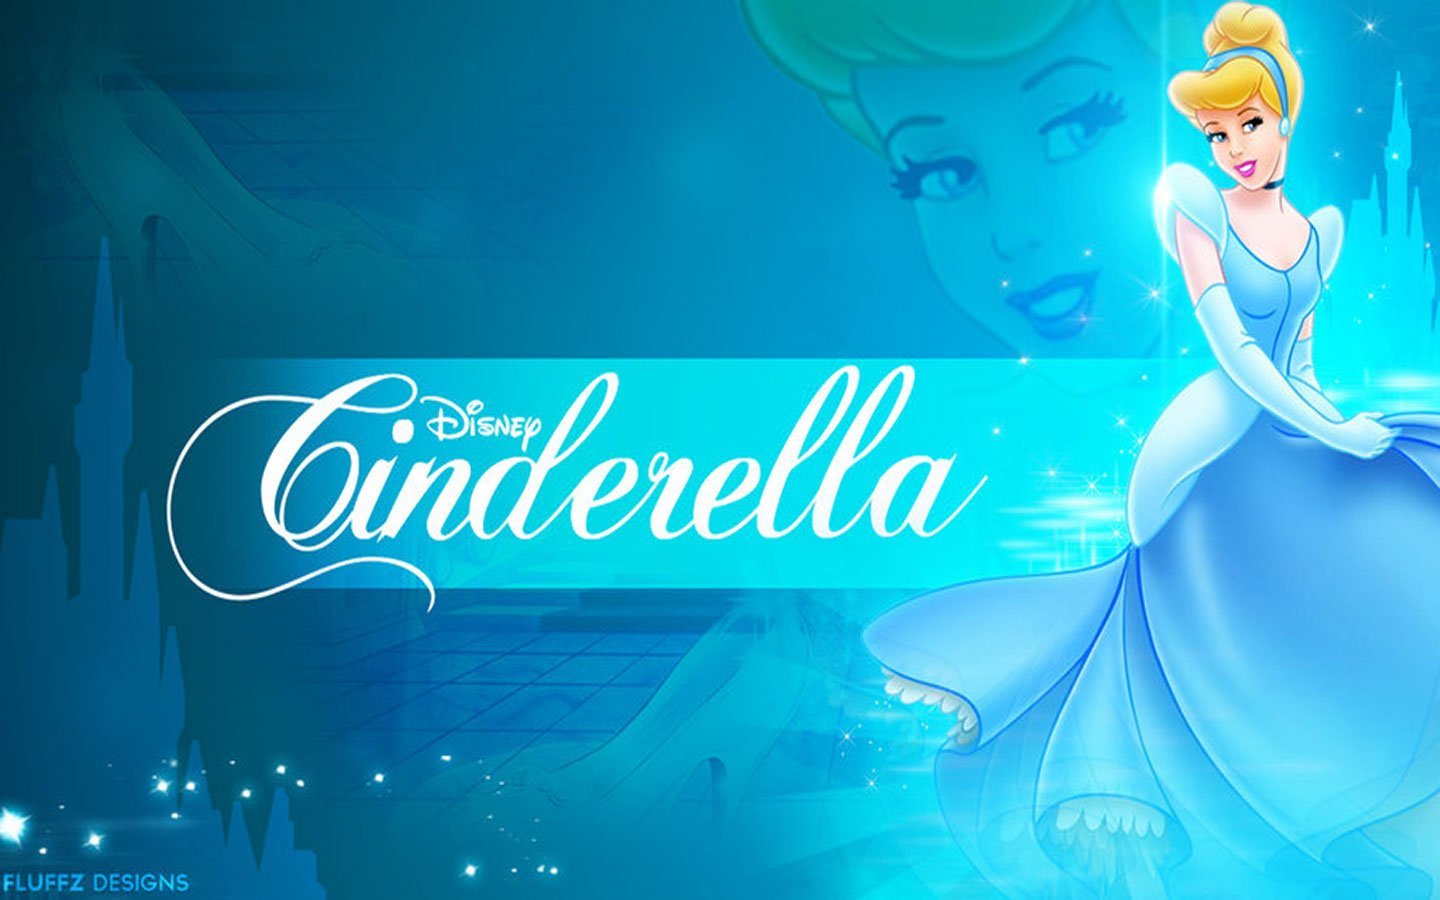 Cinderella перевод на русский